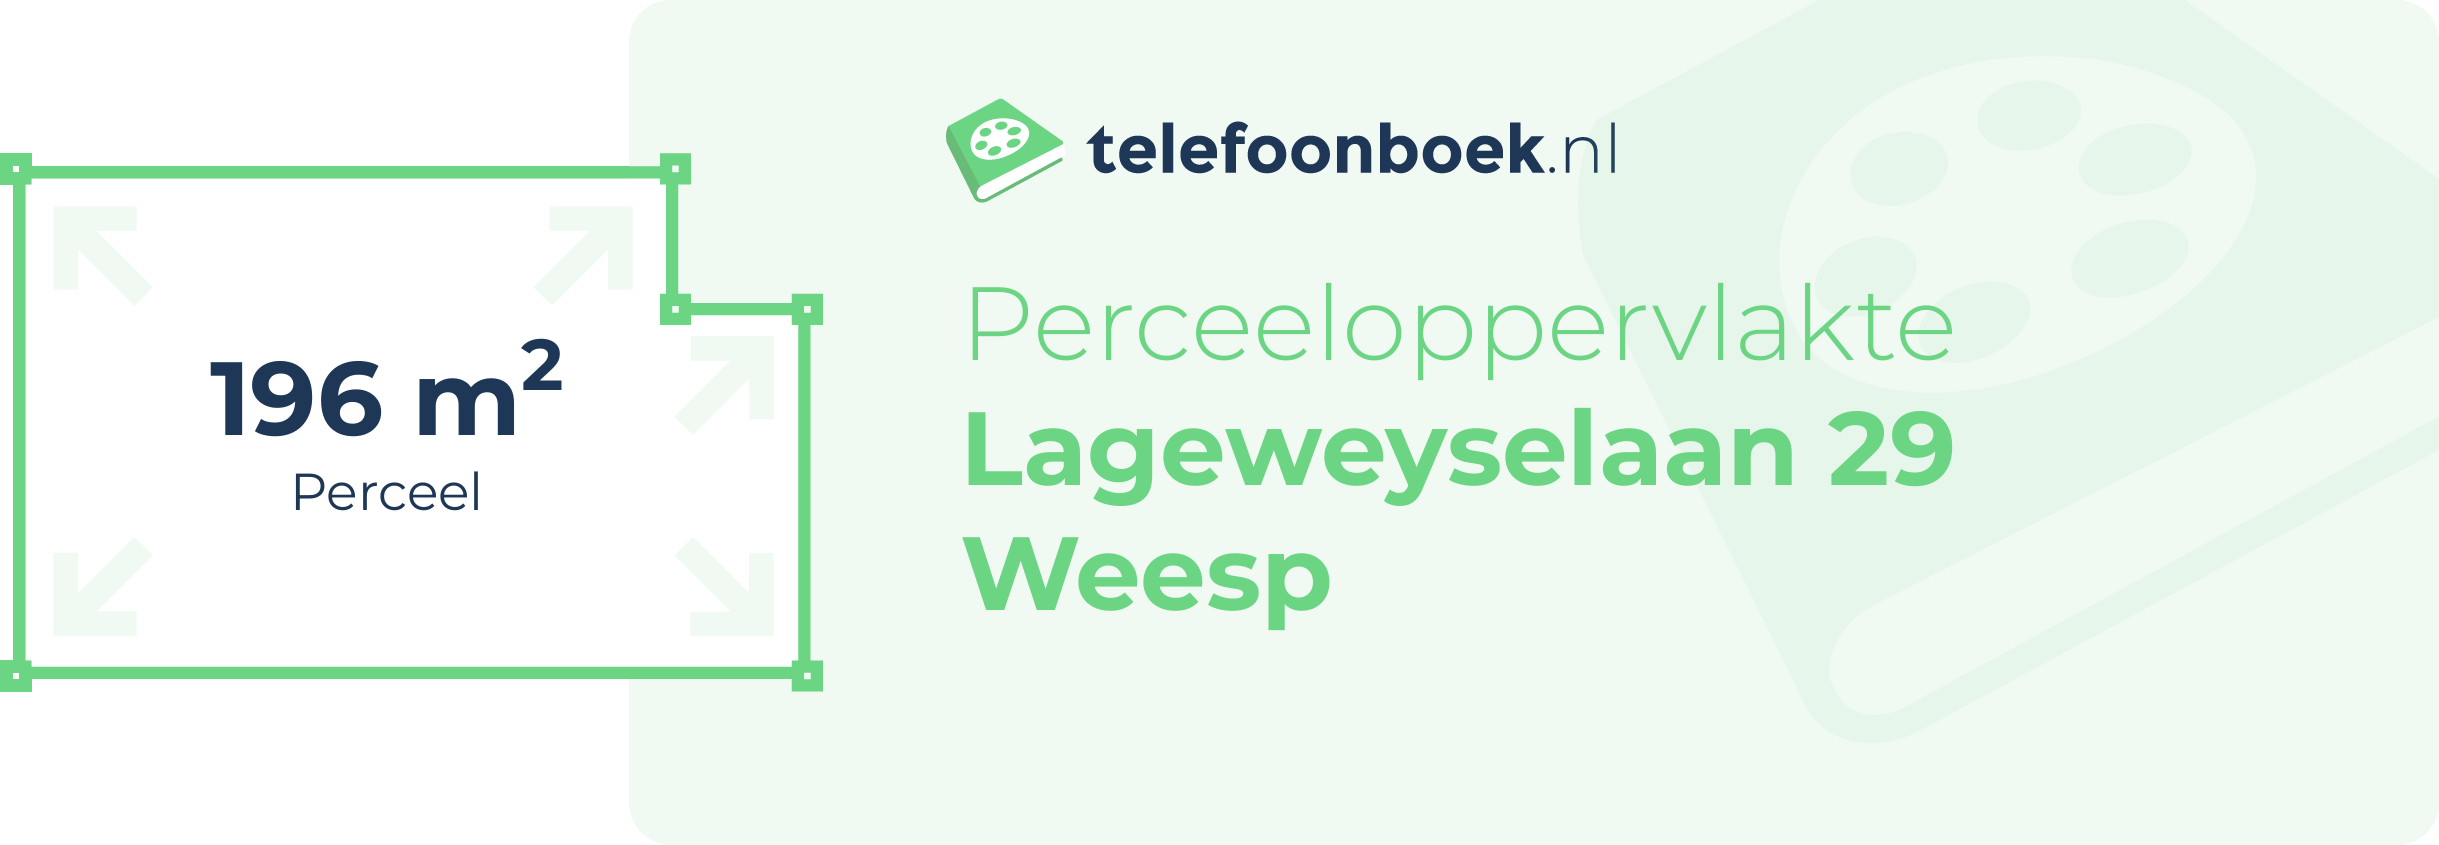 Perceeloppervlakte Lageweyselaan 29 Weesp